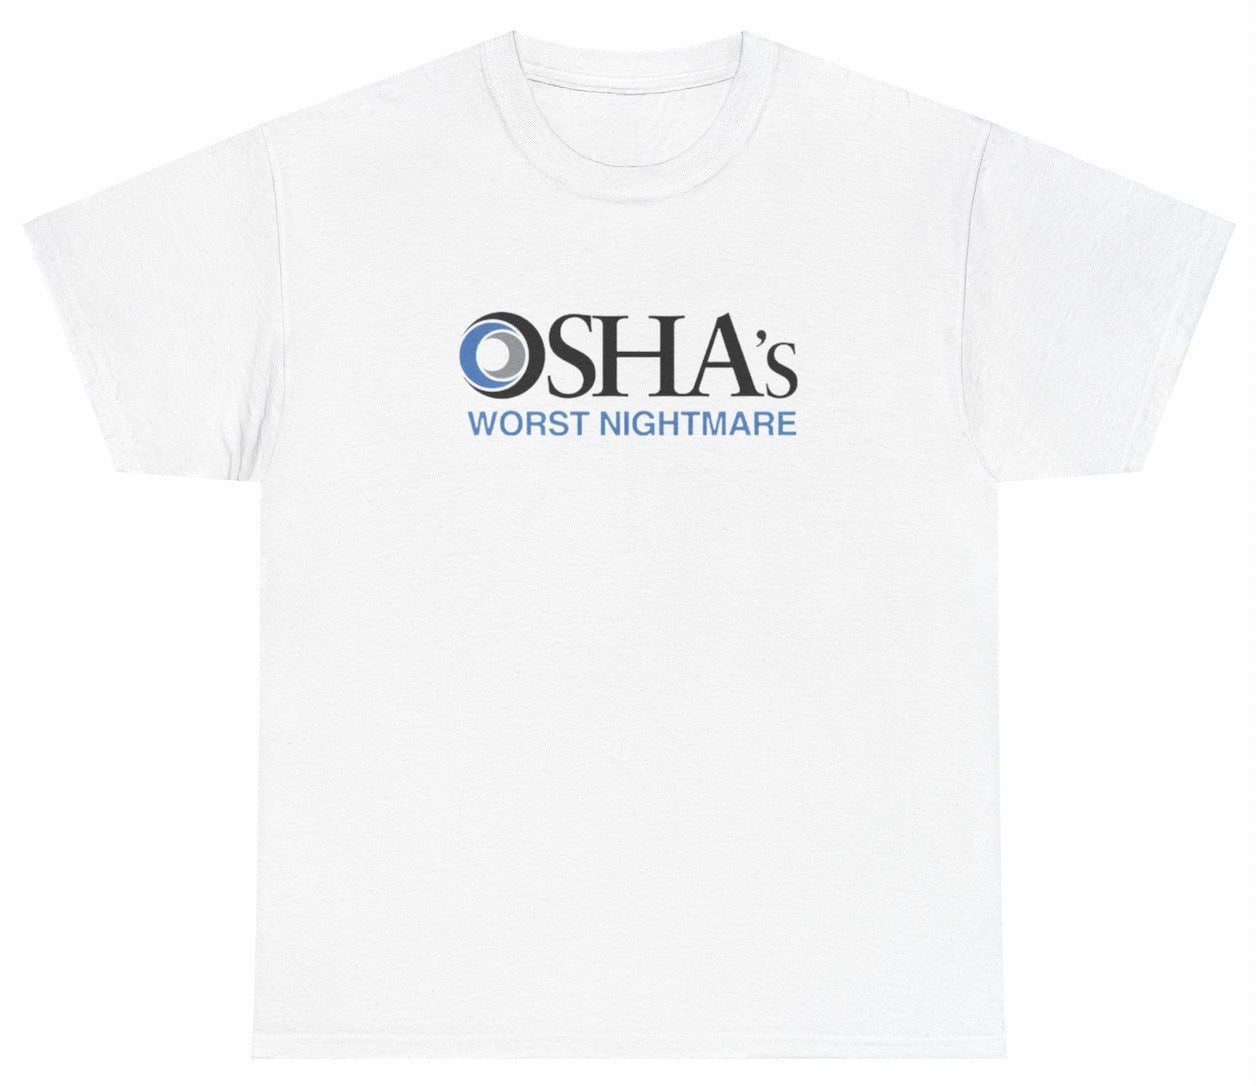 AAA OSHA's Worst Nightmare T Shirt